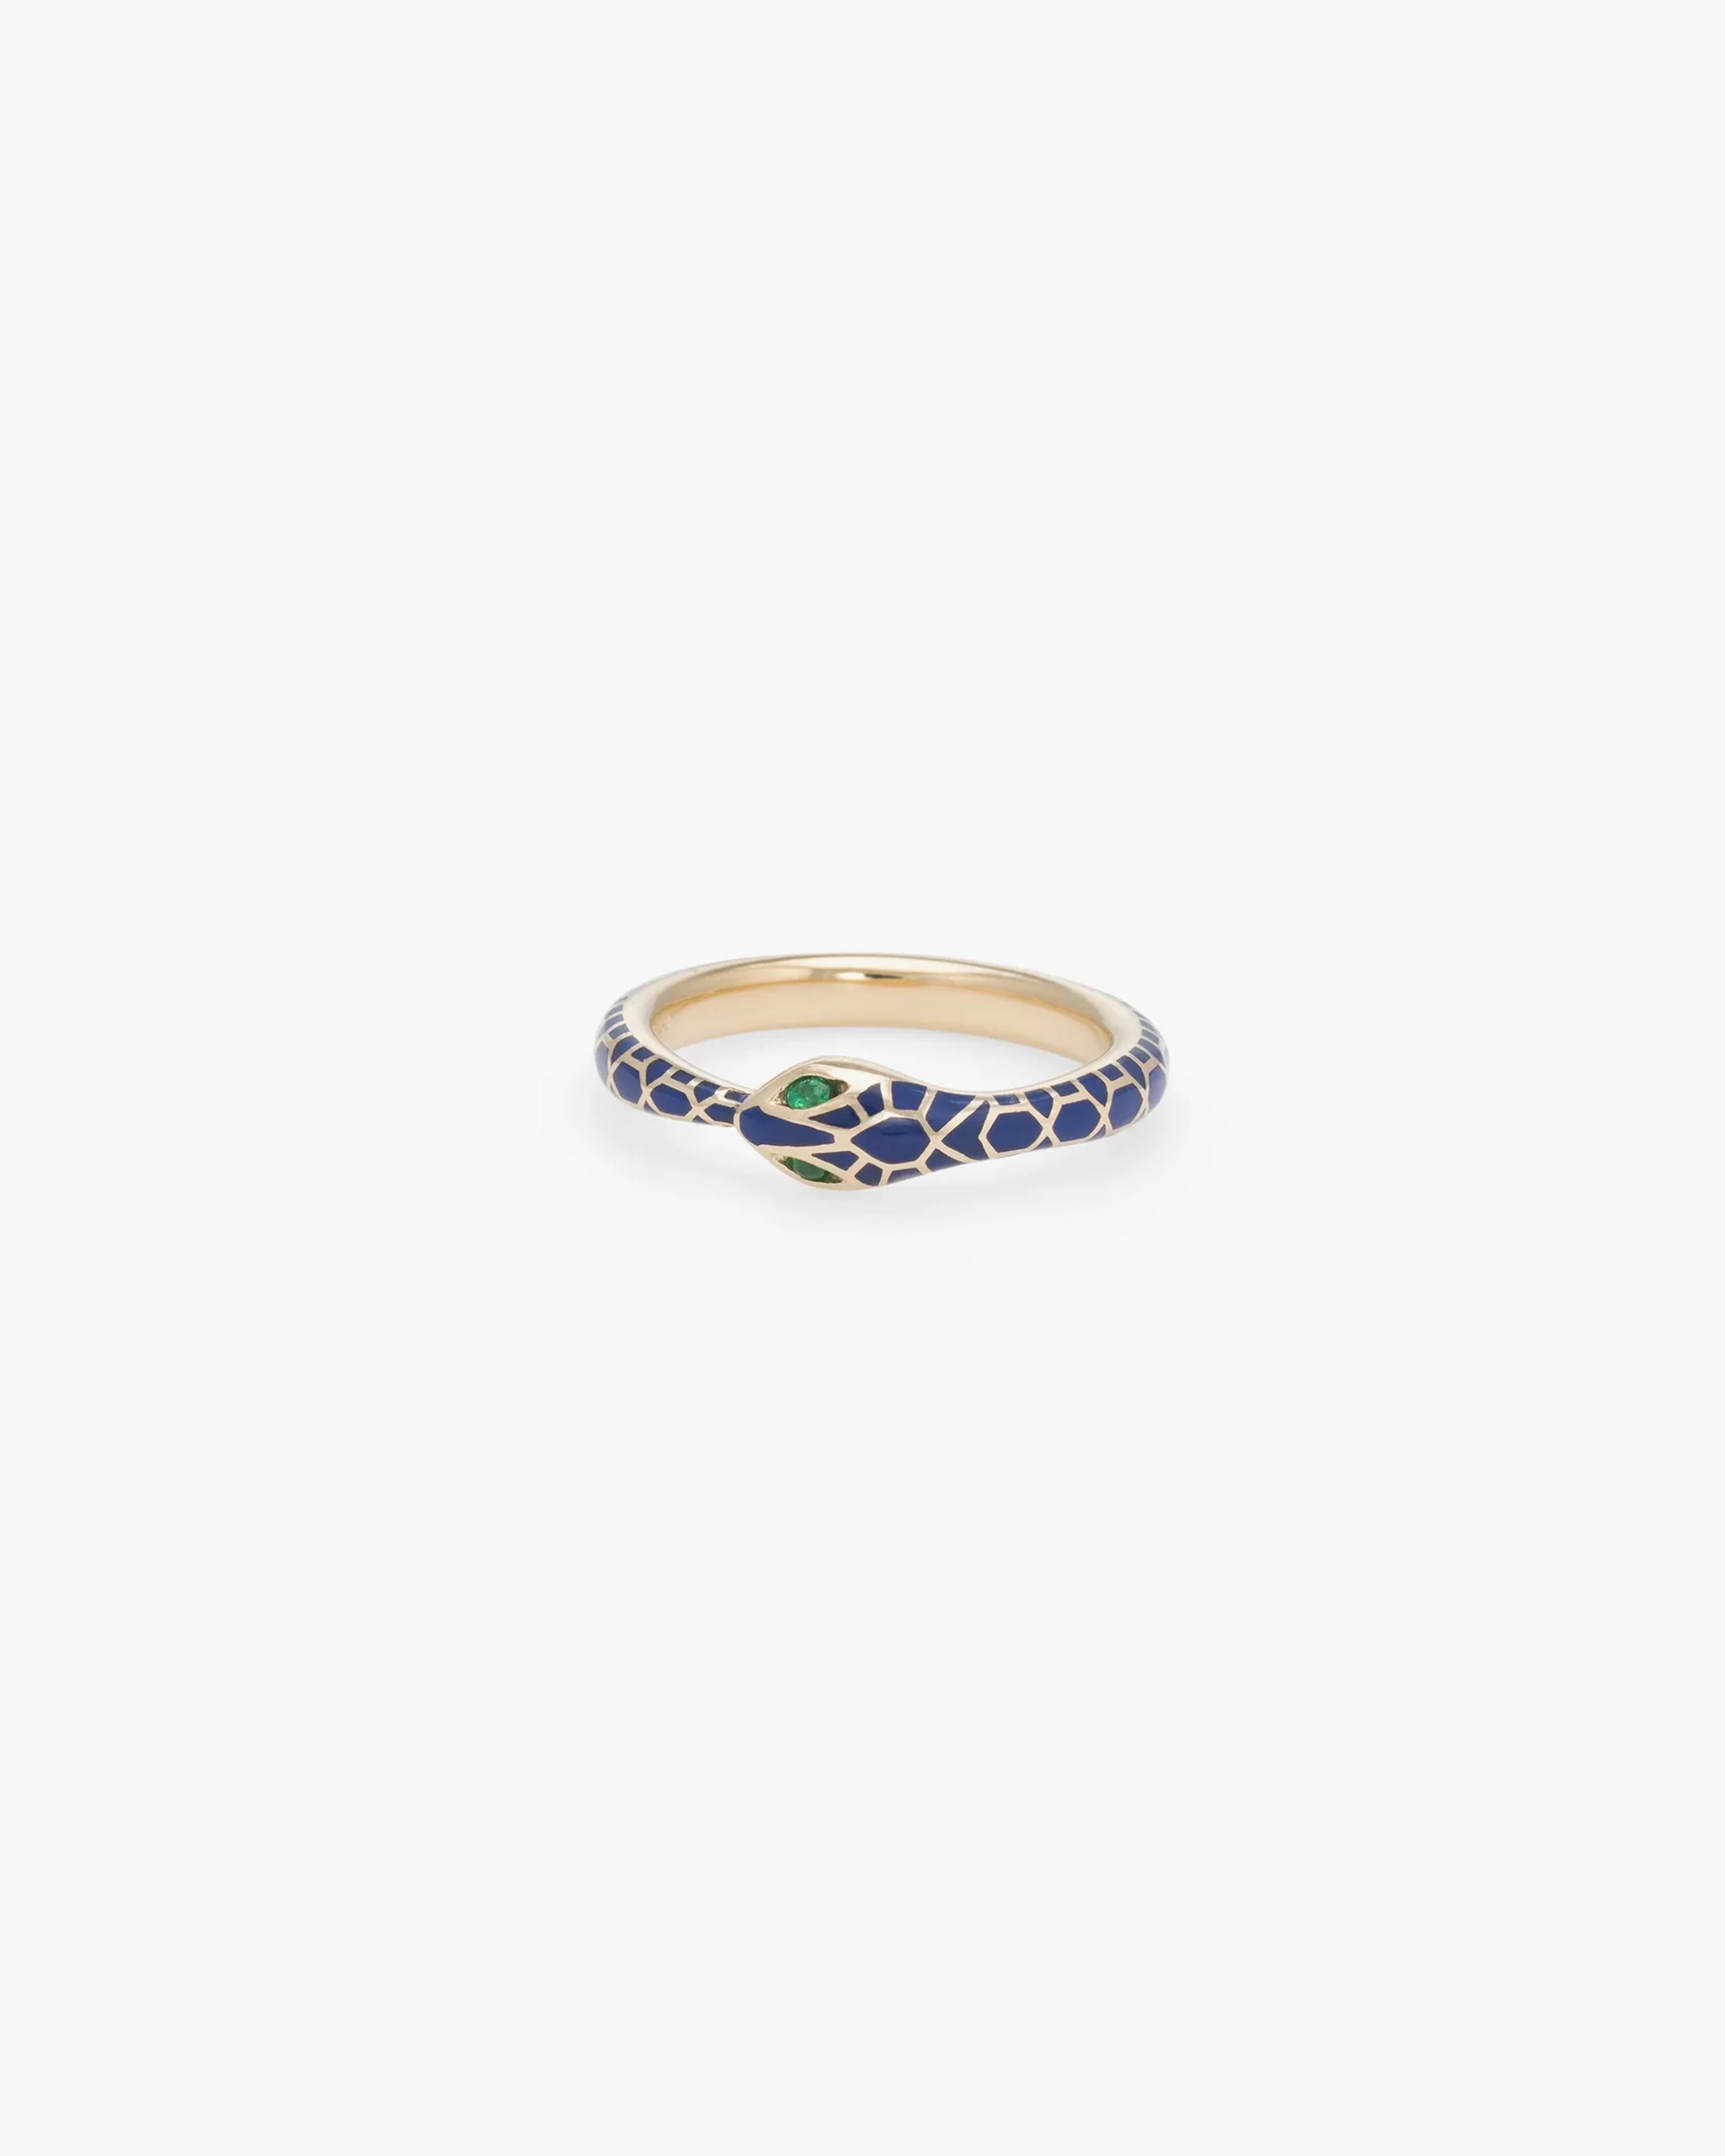 Ouroboros Emerald Eye Ring